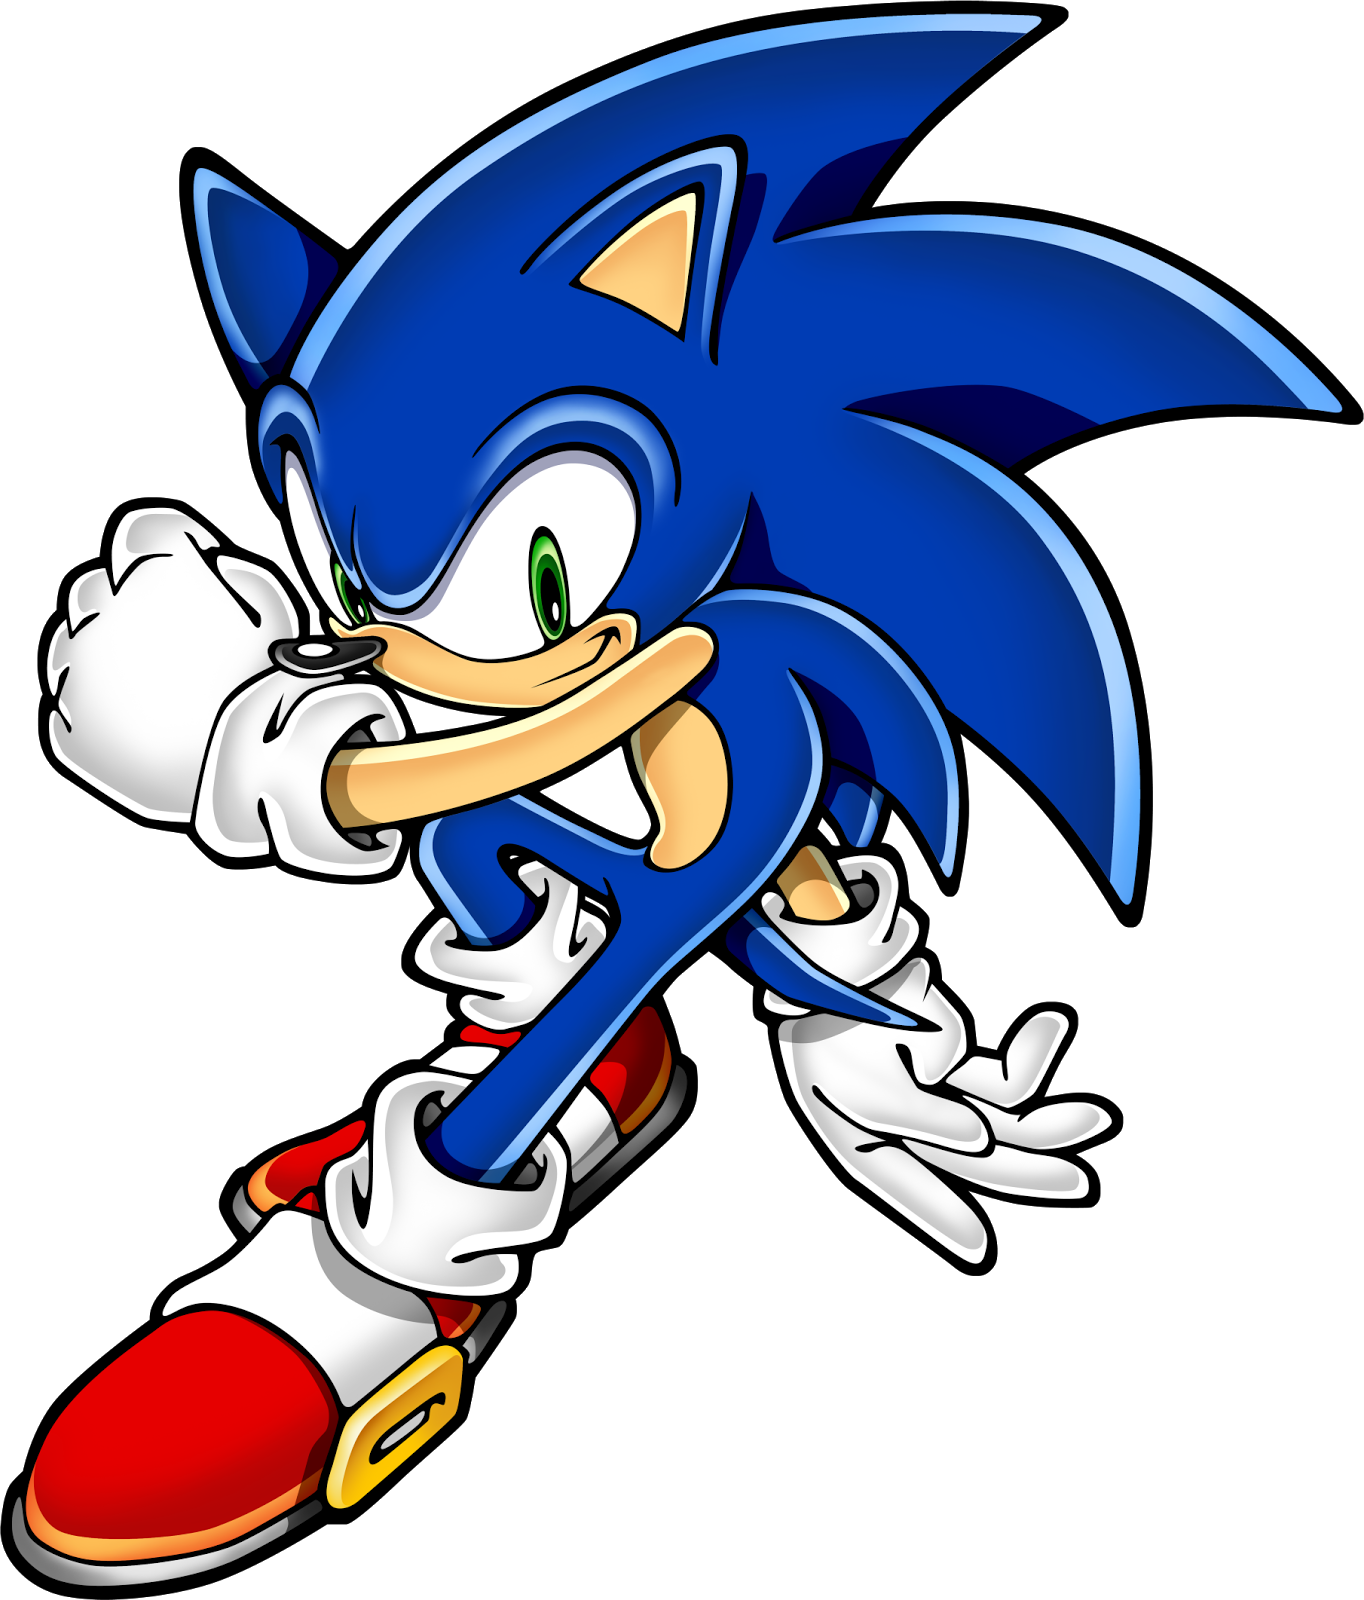 Slideshow: Sonic 2: O Filme - Posters das Personagens